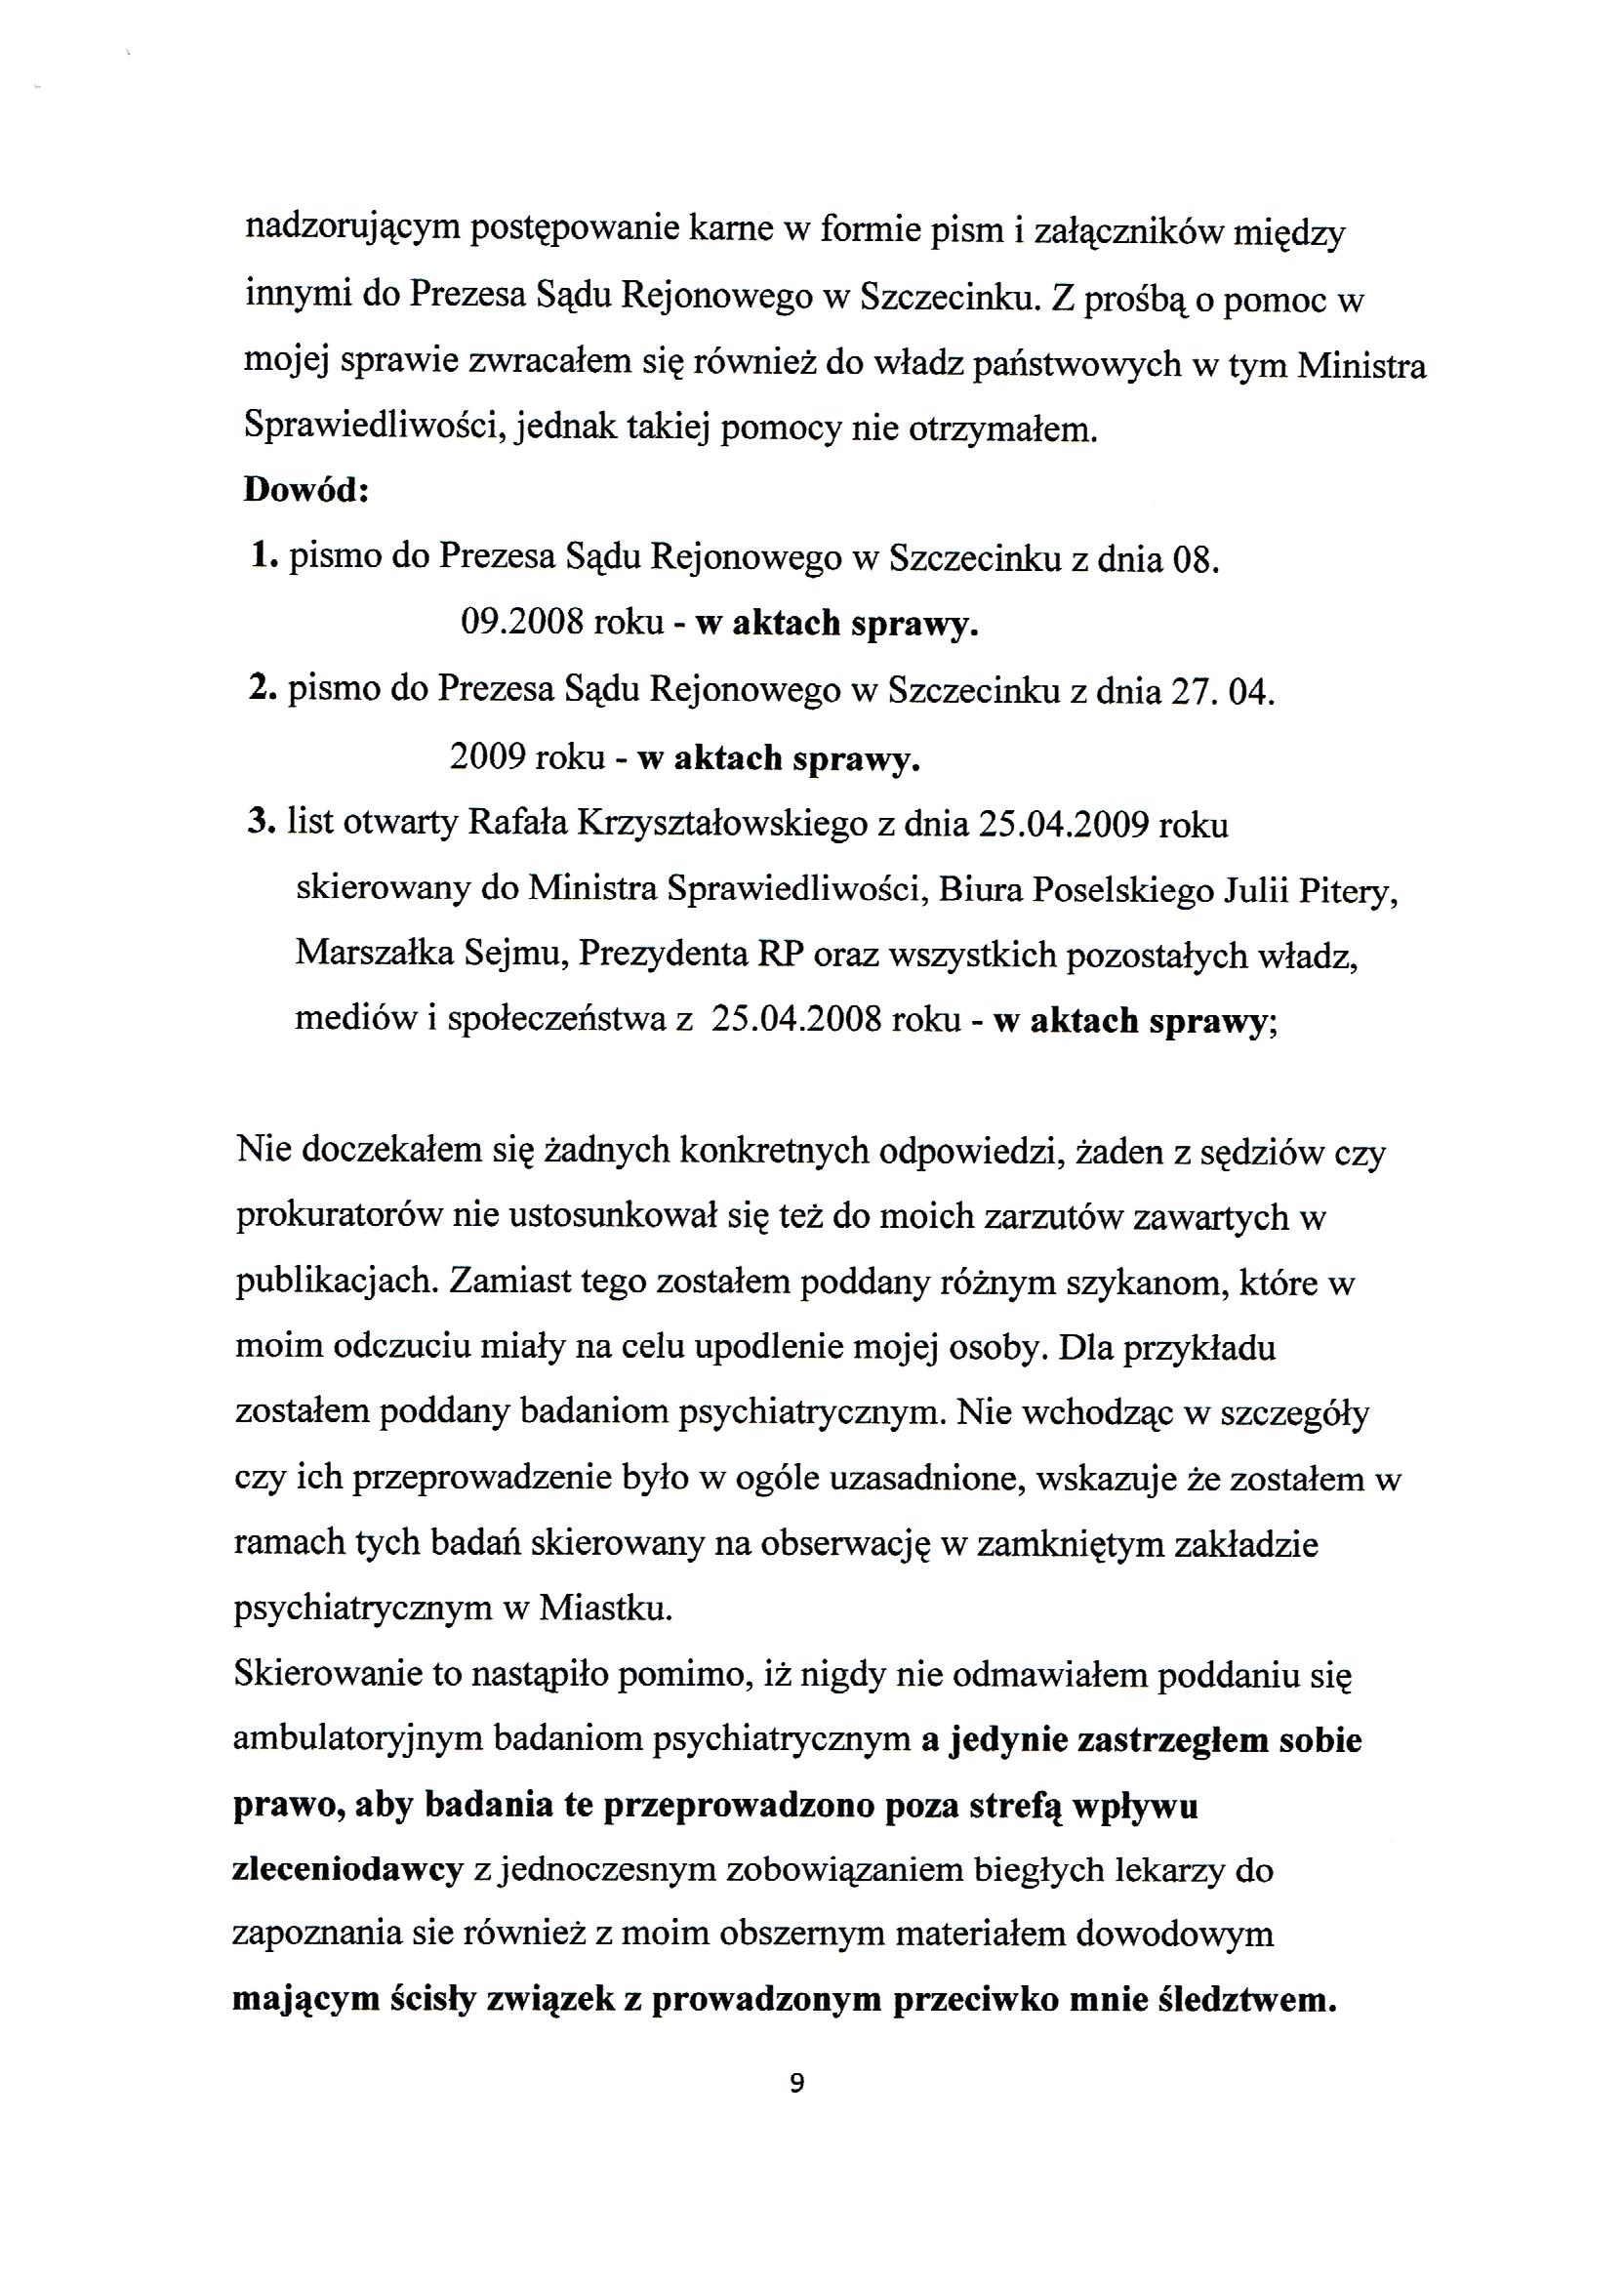 Apelacja Krzyształowski skan 009